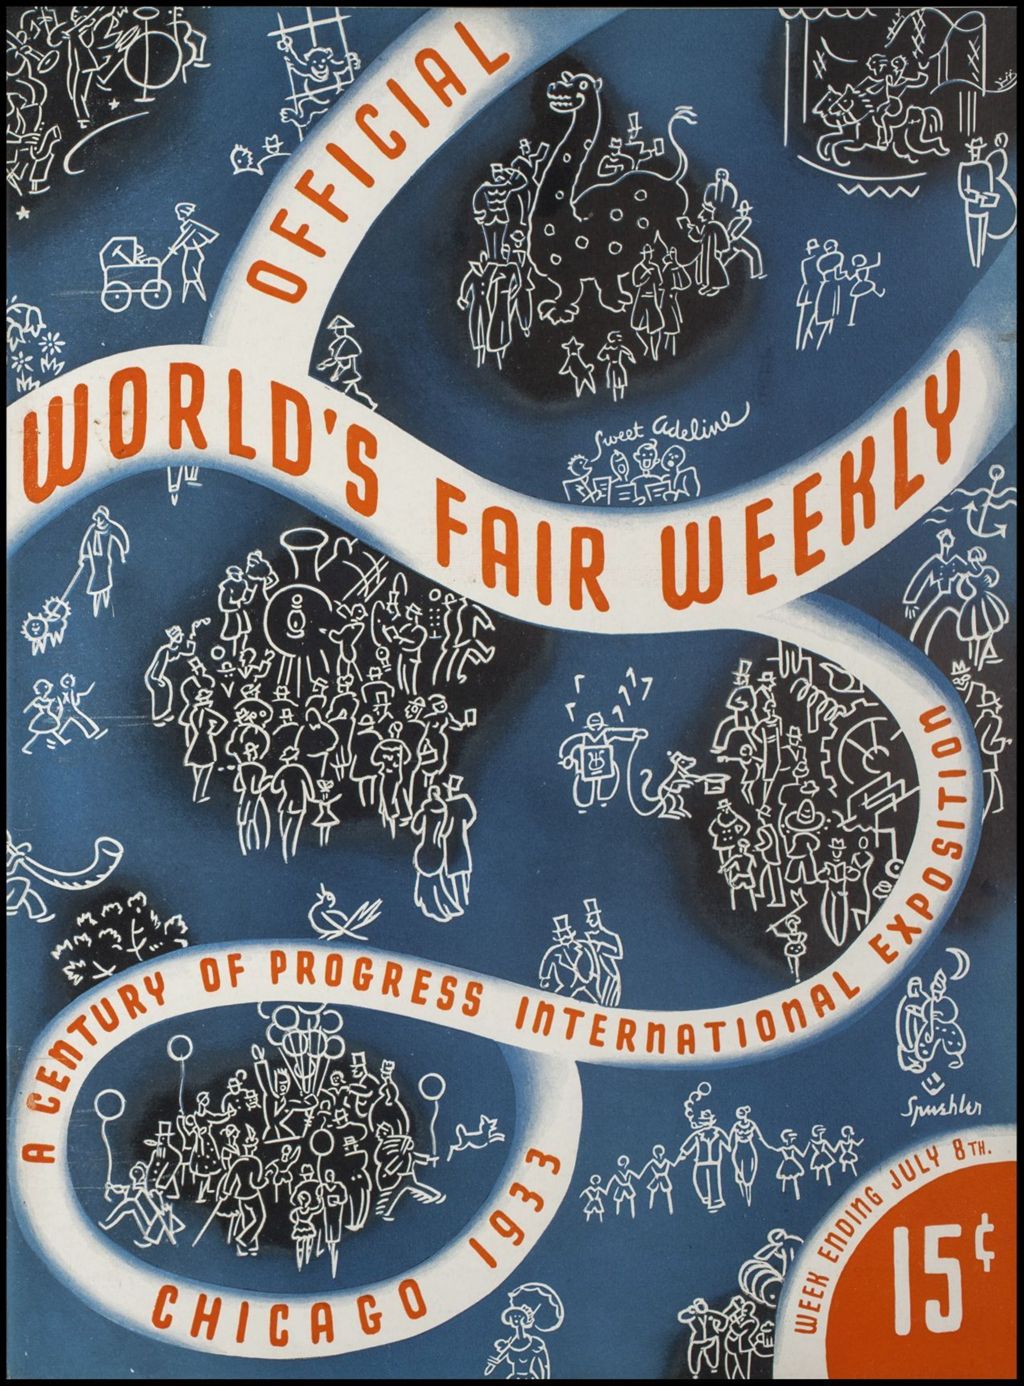 World's Fair Weekly, Week Ending July 8, 1933